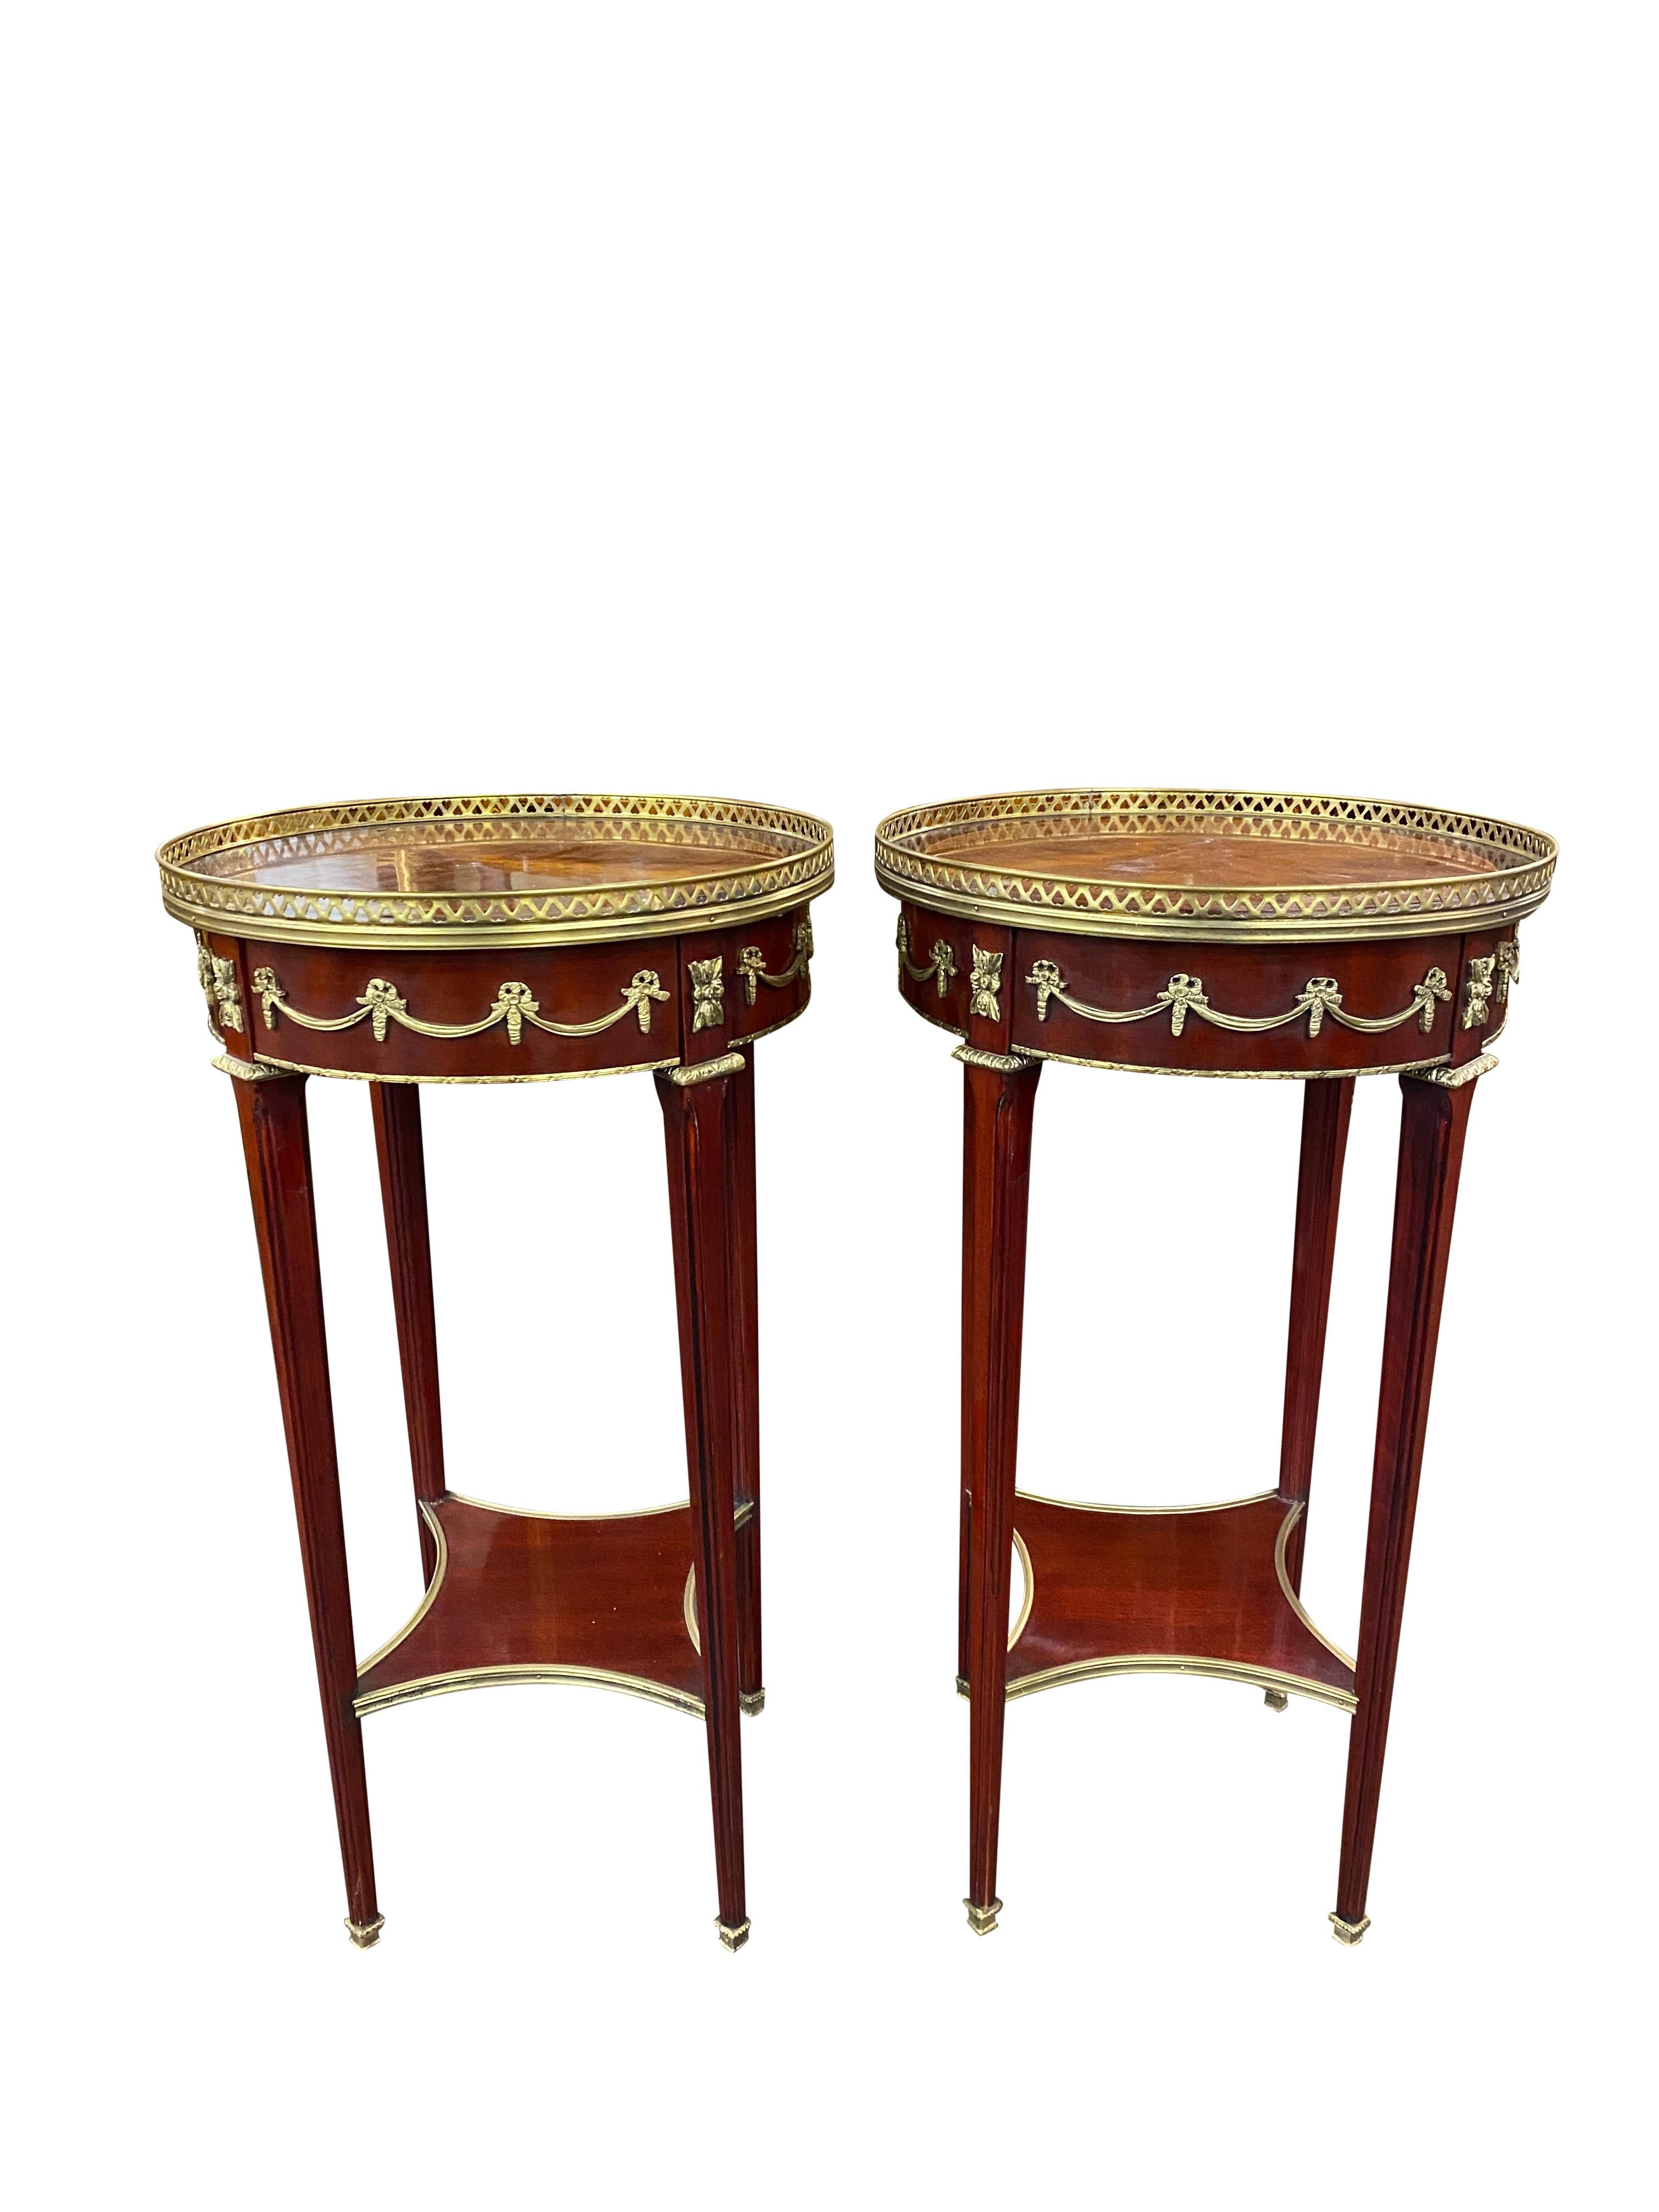 Une superbe paire de tables d'appoint de style Empire du 20e siècle. Un design magnifique et élégant, parfait pour les intérieurs modernes.